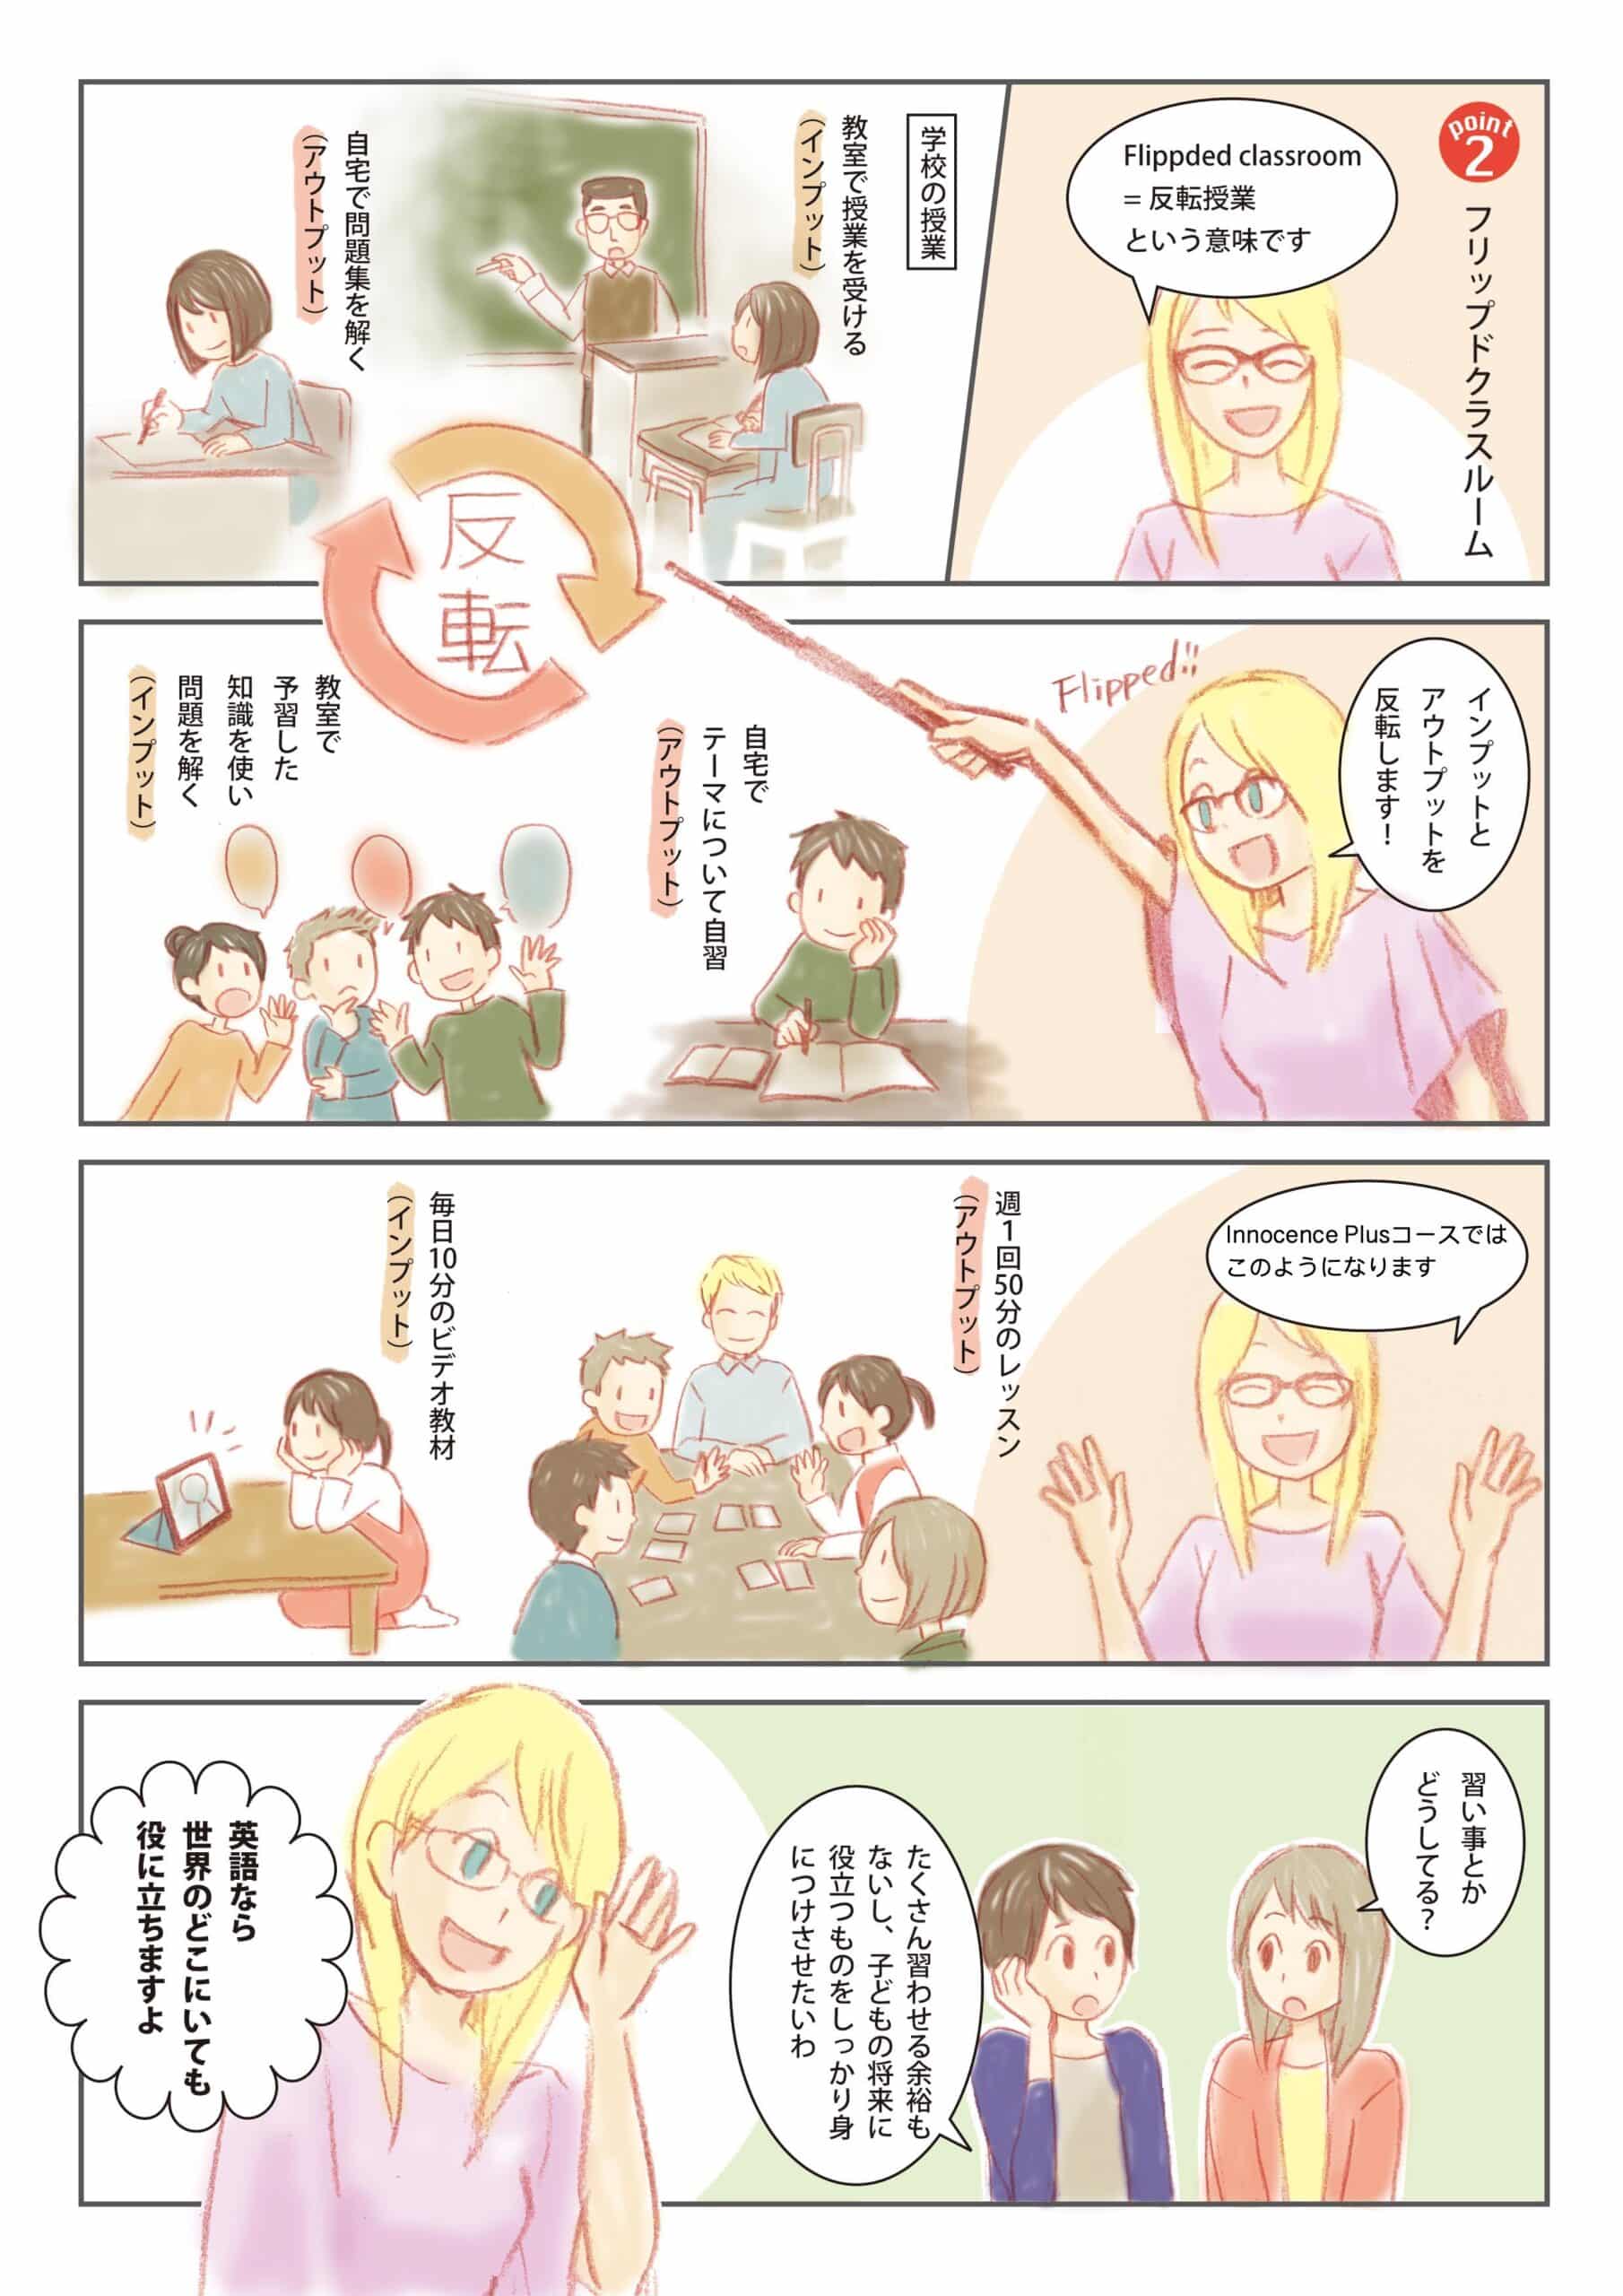 仙台の英会話イノセンスプラスを漫画で紹介しています。2